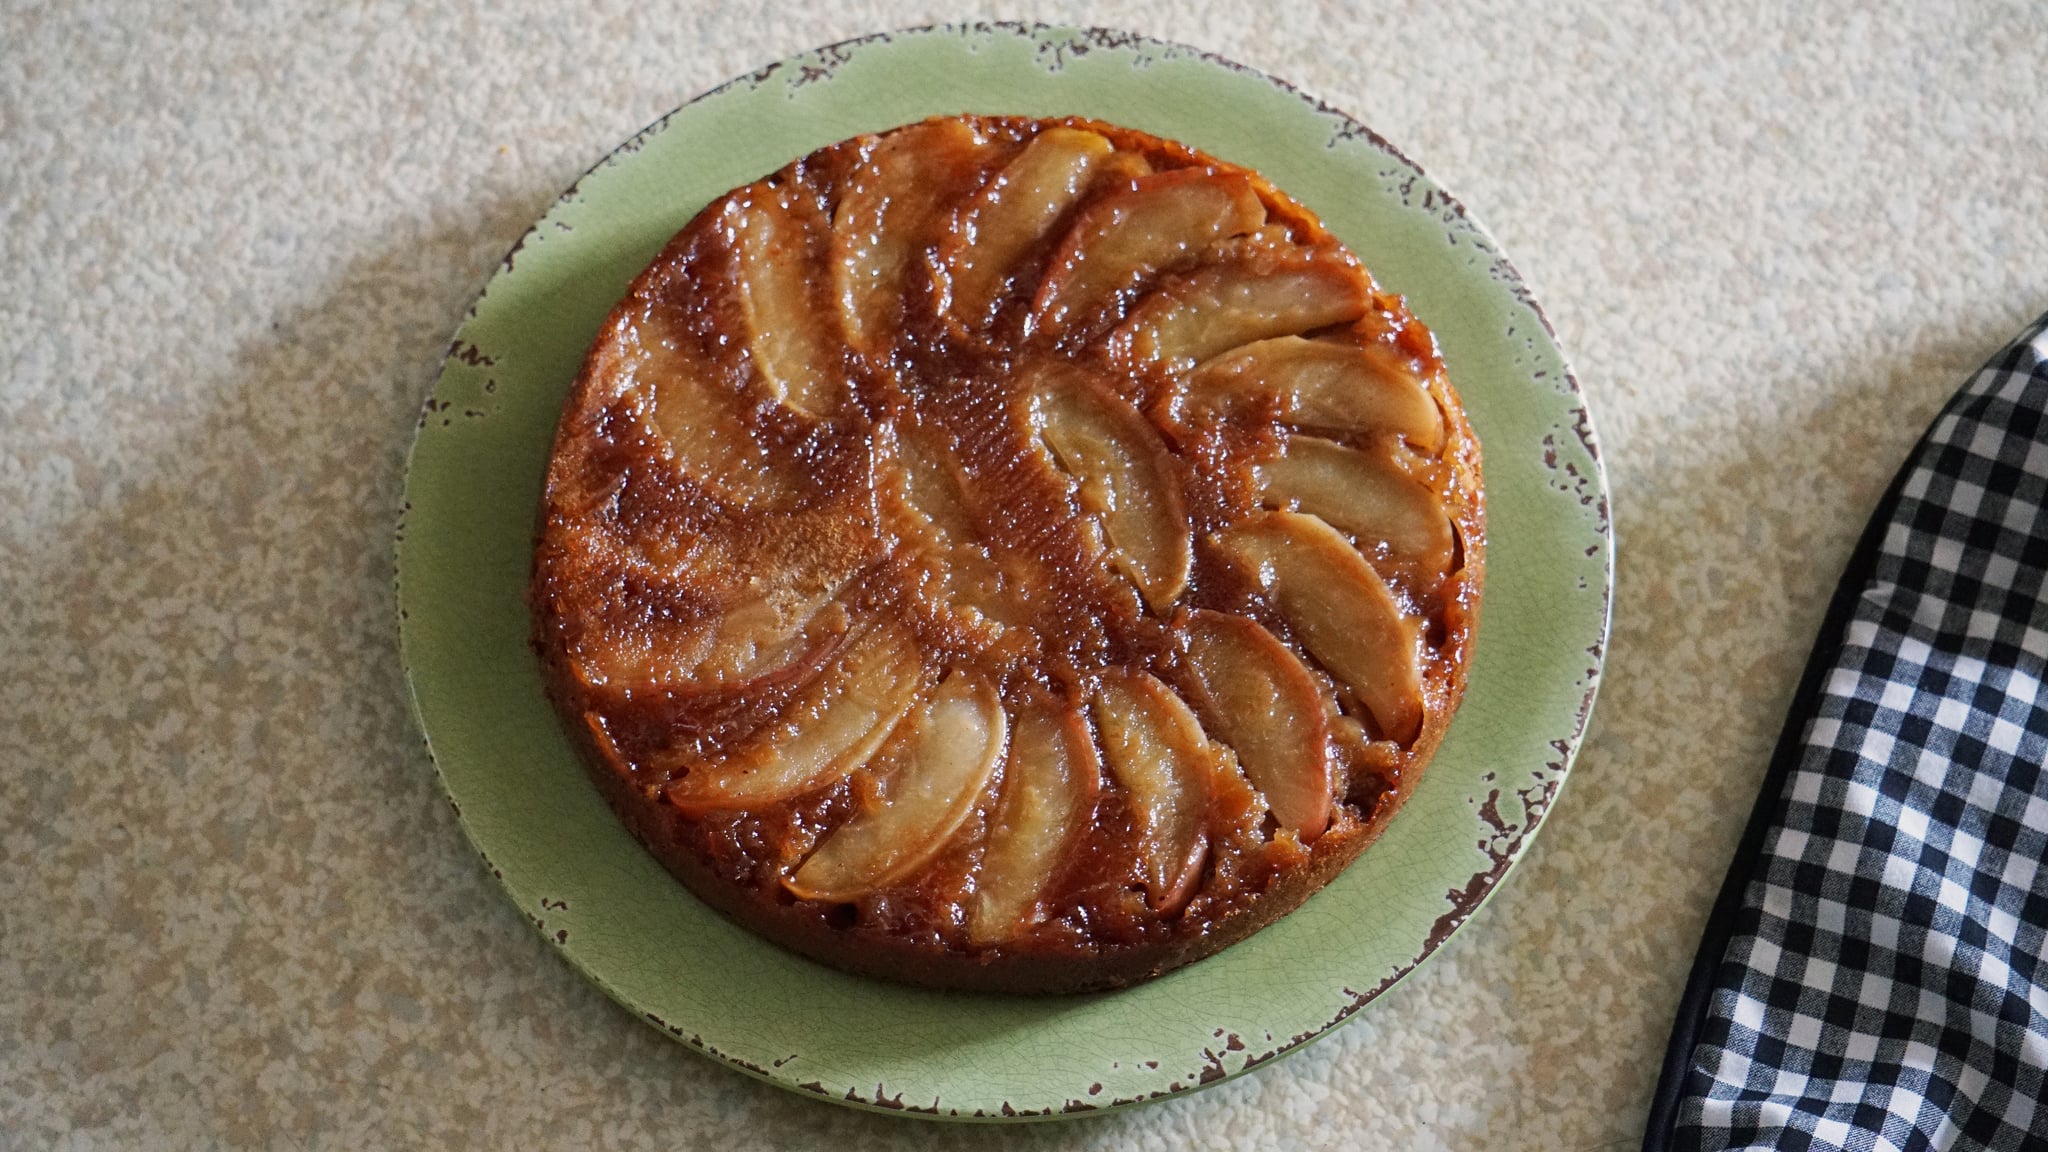 apple honey upside down cake for rosh hashanah dessert: finished cake on plate